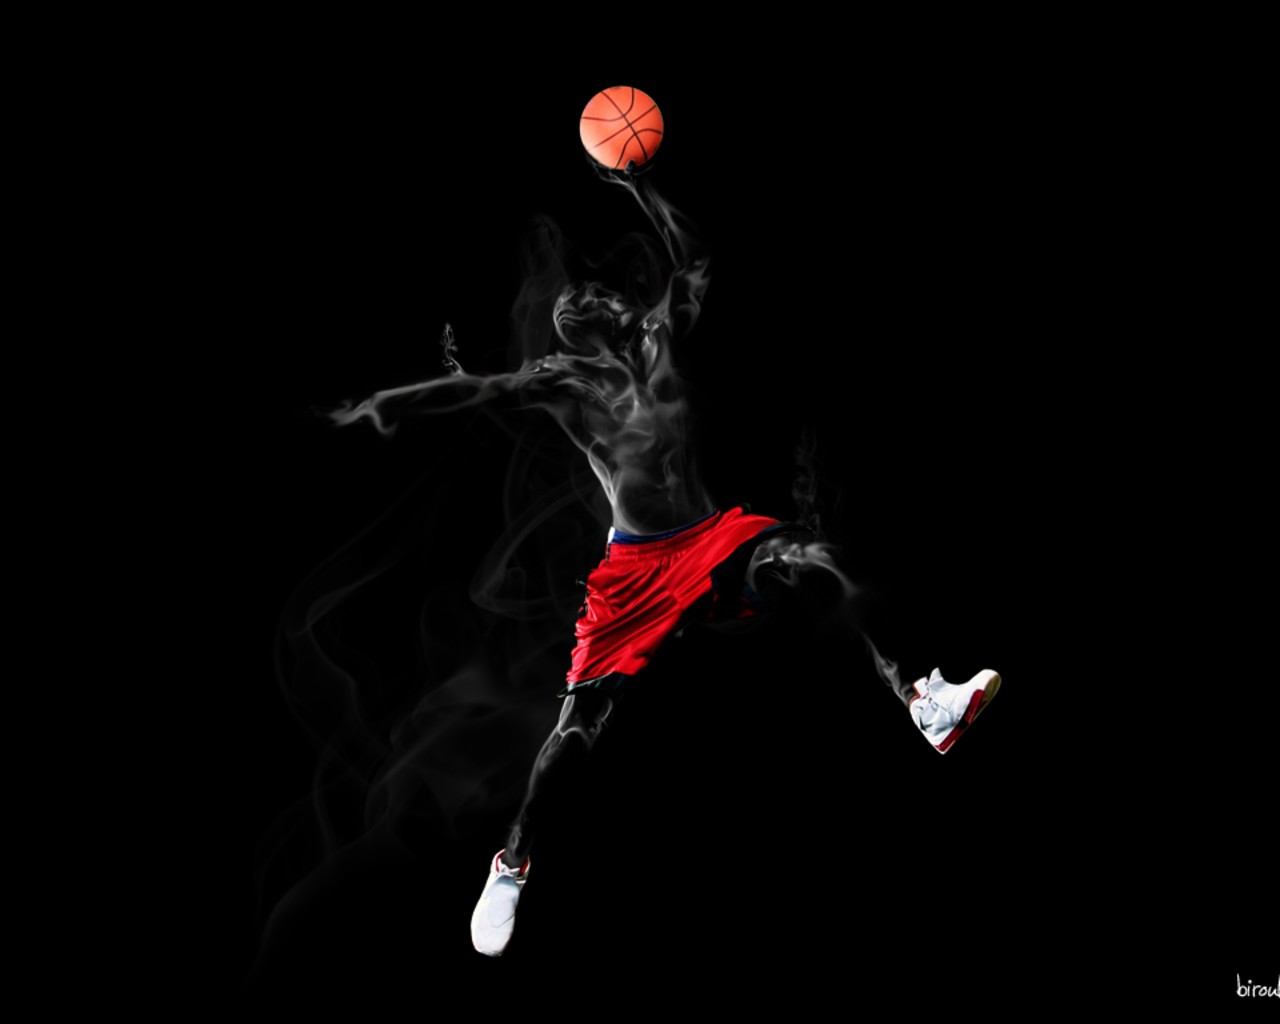 Jordan Jump Wallpaper 1280x1024 Jordan Jump Basketball Arms Raised